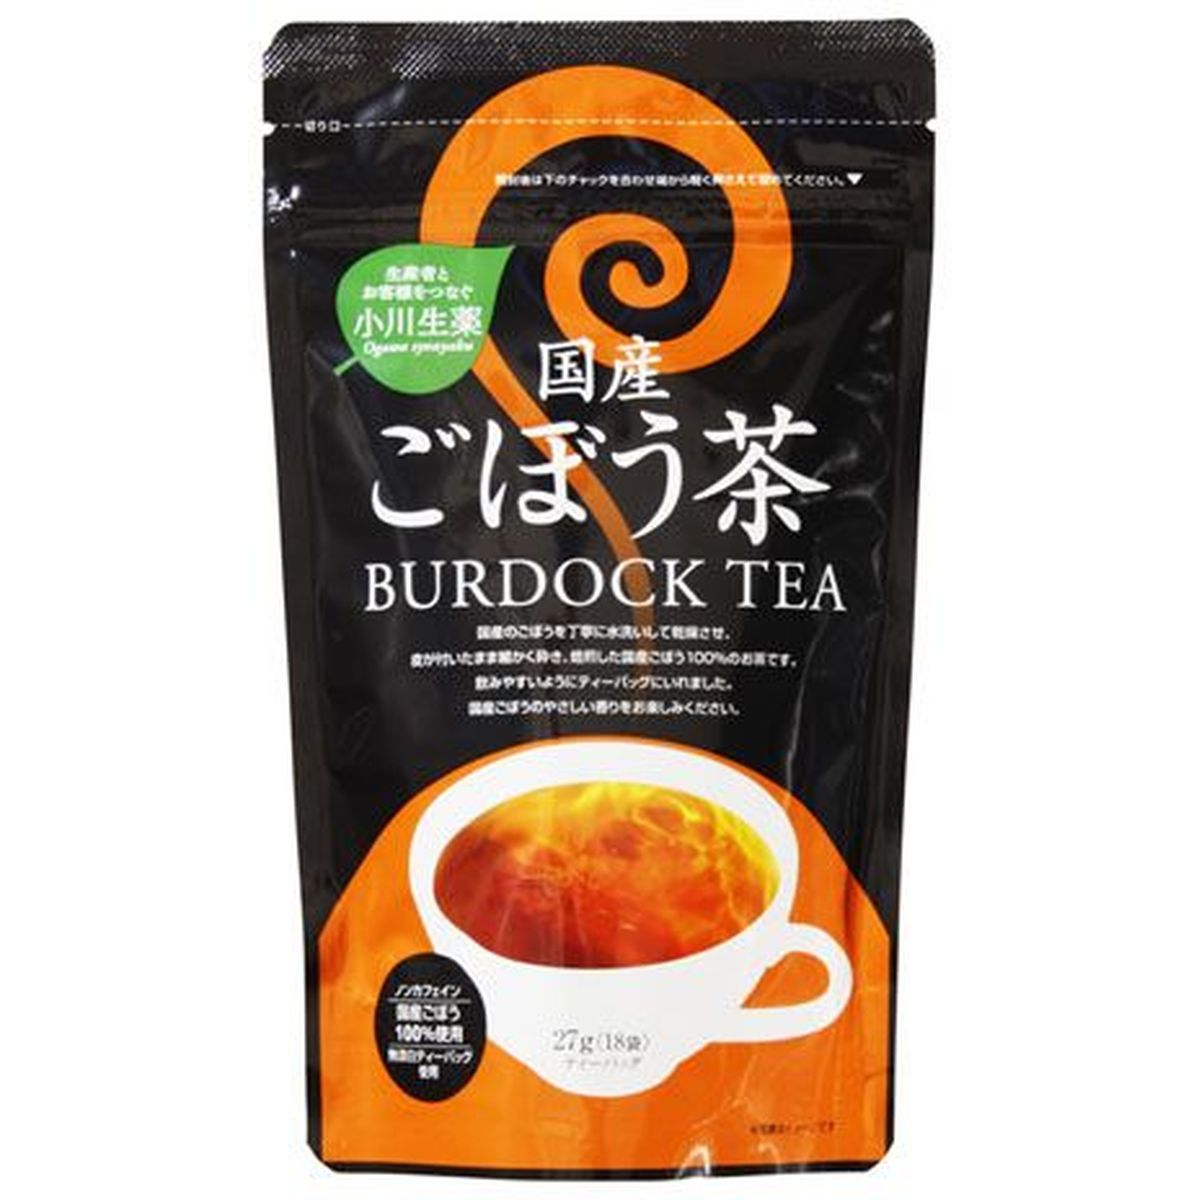 【20個入リ】小川生薬 国産ゴボウ茶 ティーバッグ 1.5x18